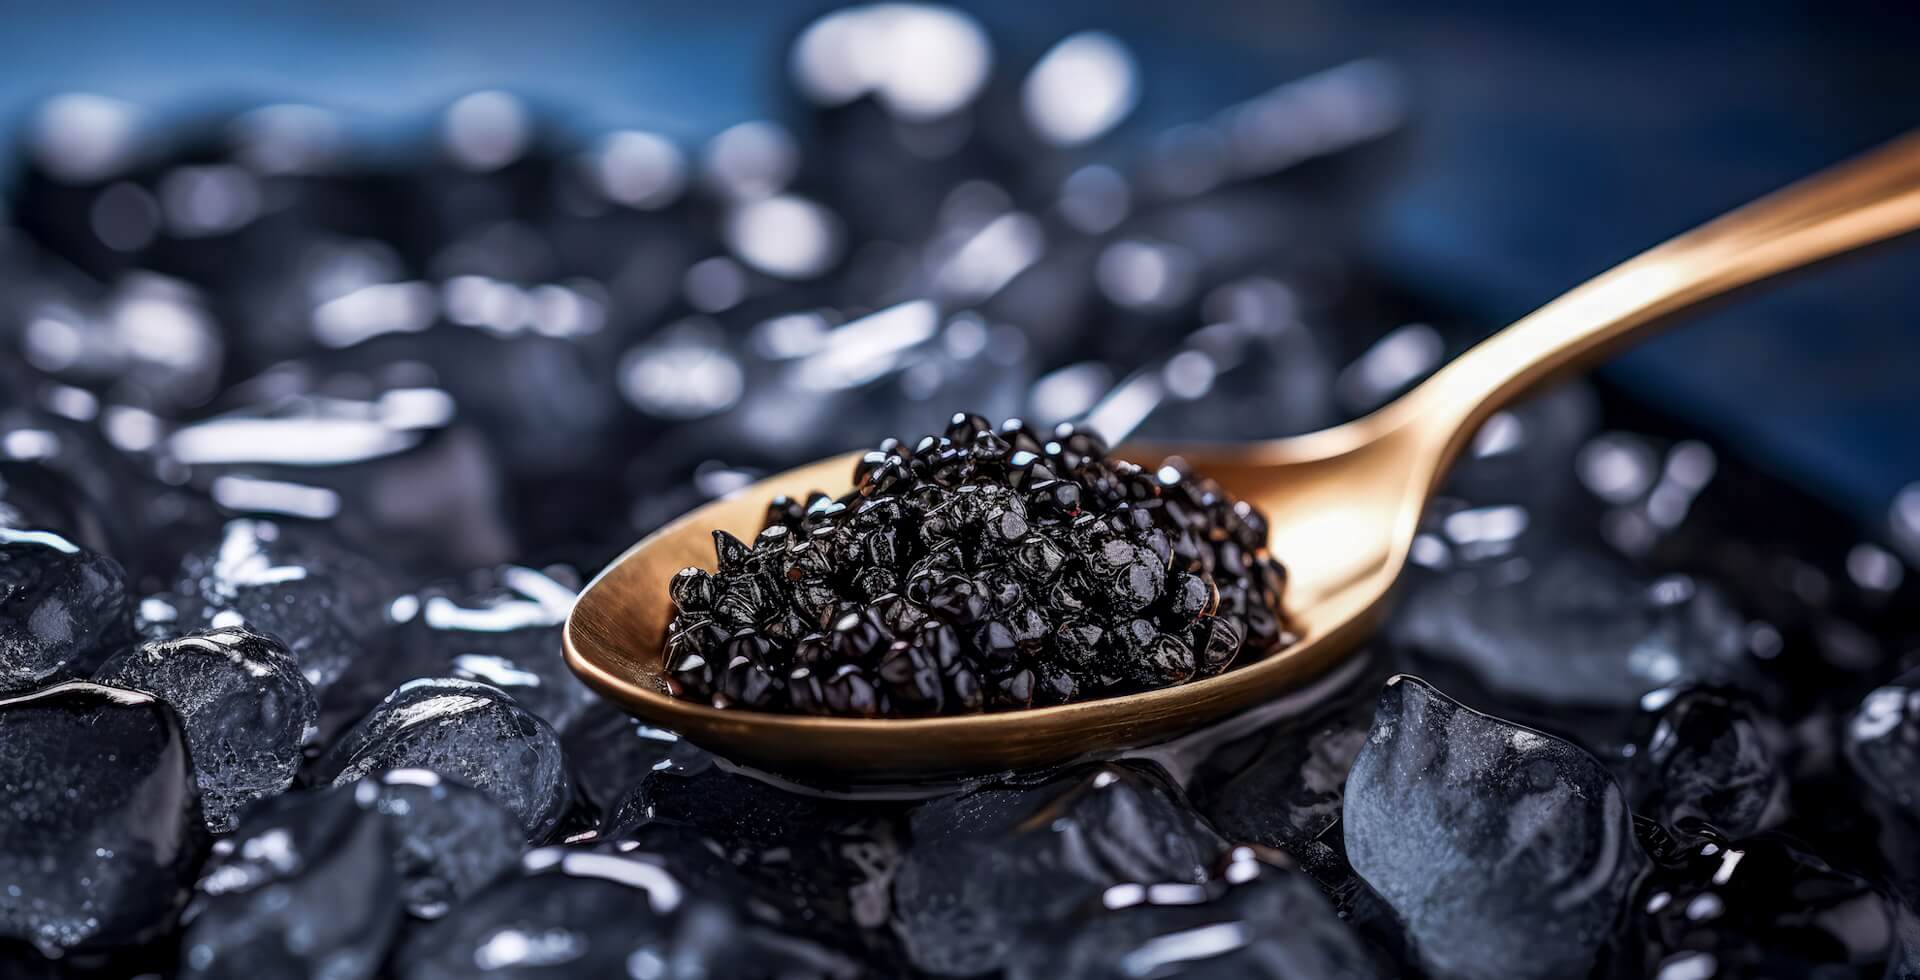 Caviar negro en una cuchara dorada, colocada sobre piedras negras.